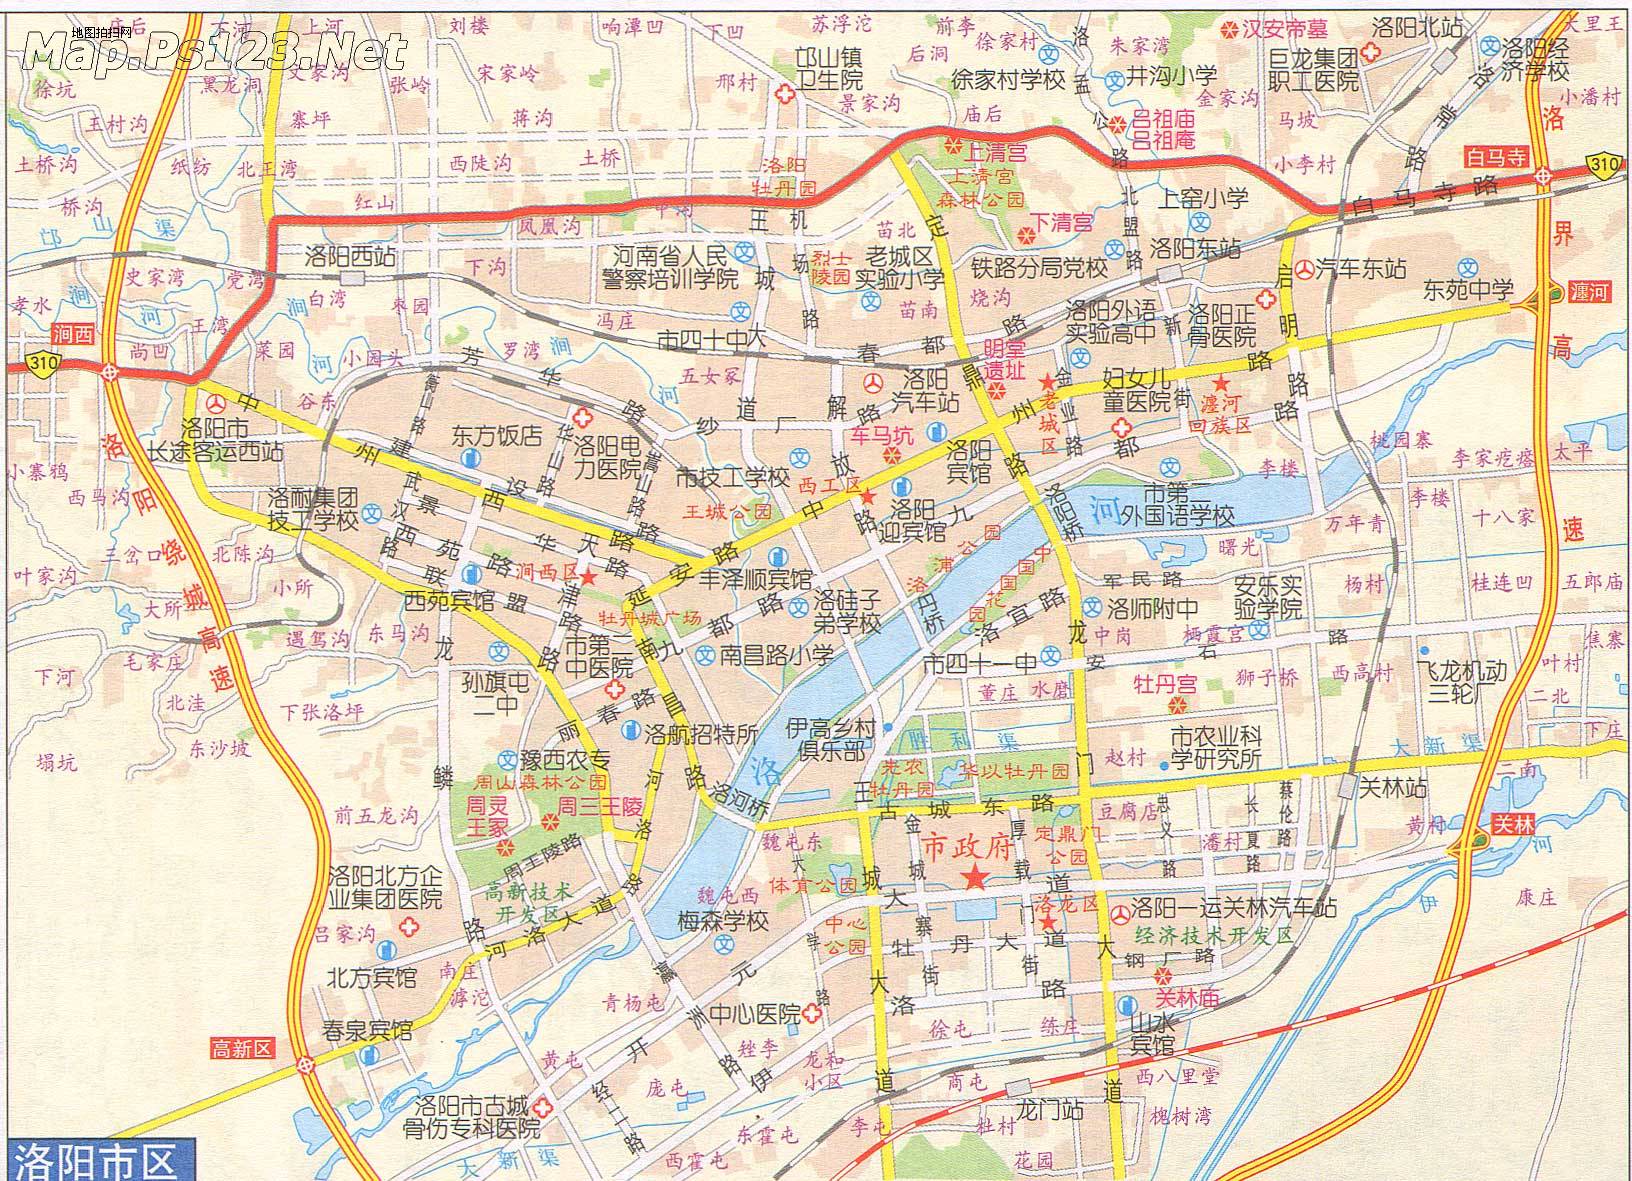 洛阳市 >> 洛阳市区地图  相关链接: 郑州市  三门峡  洛阳市  南阳市图片